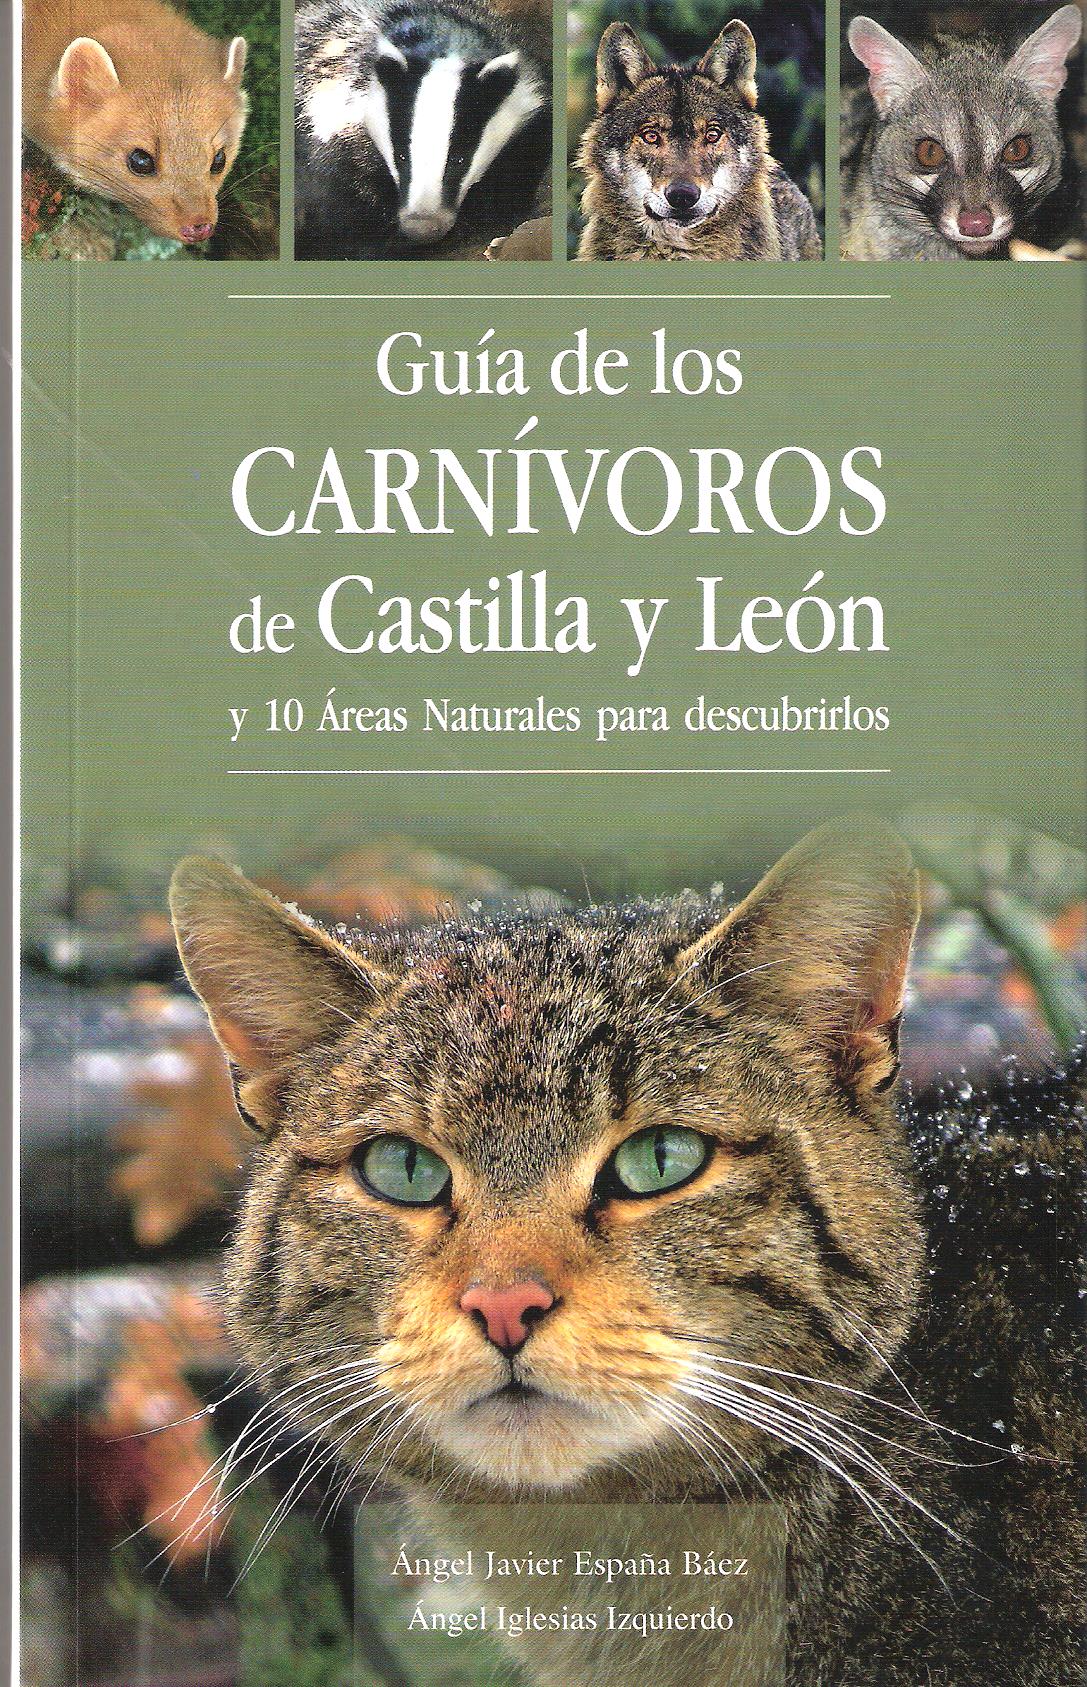 GUIA DE LOS CARNIVOROS DE CASTILLA Y LEON